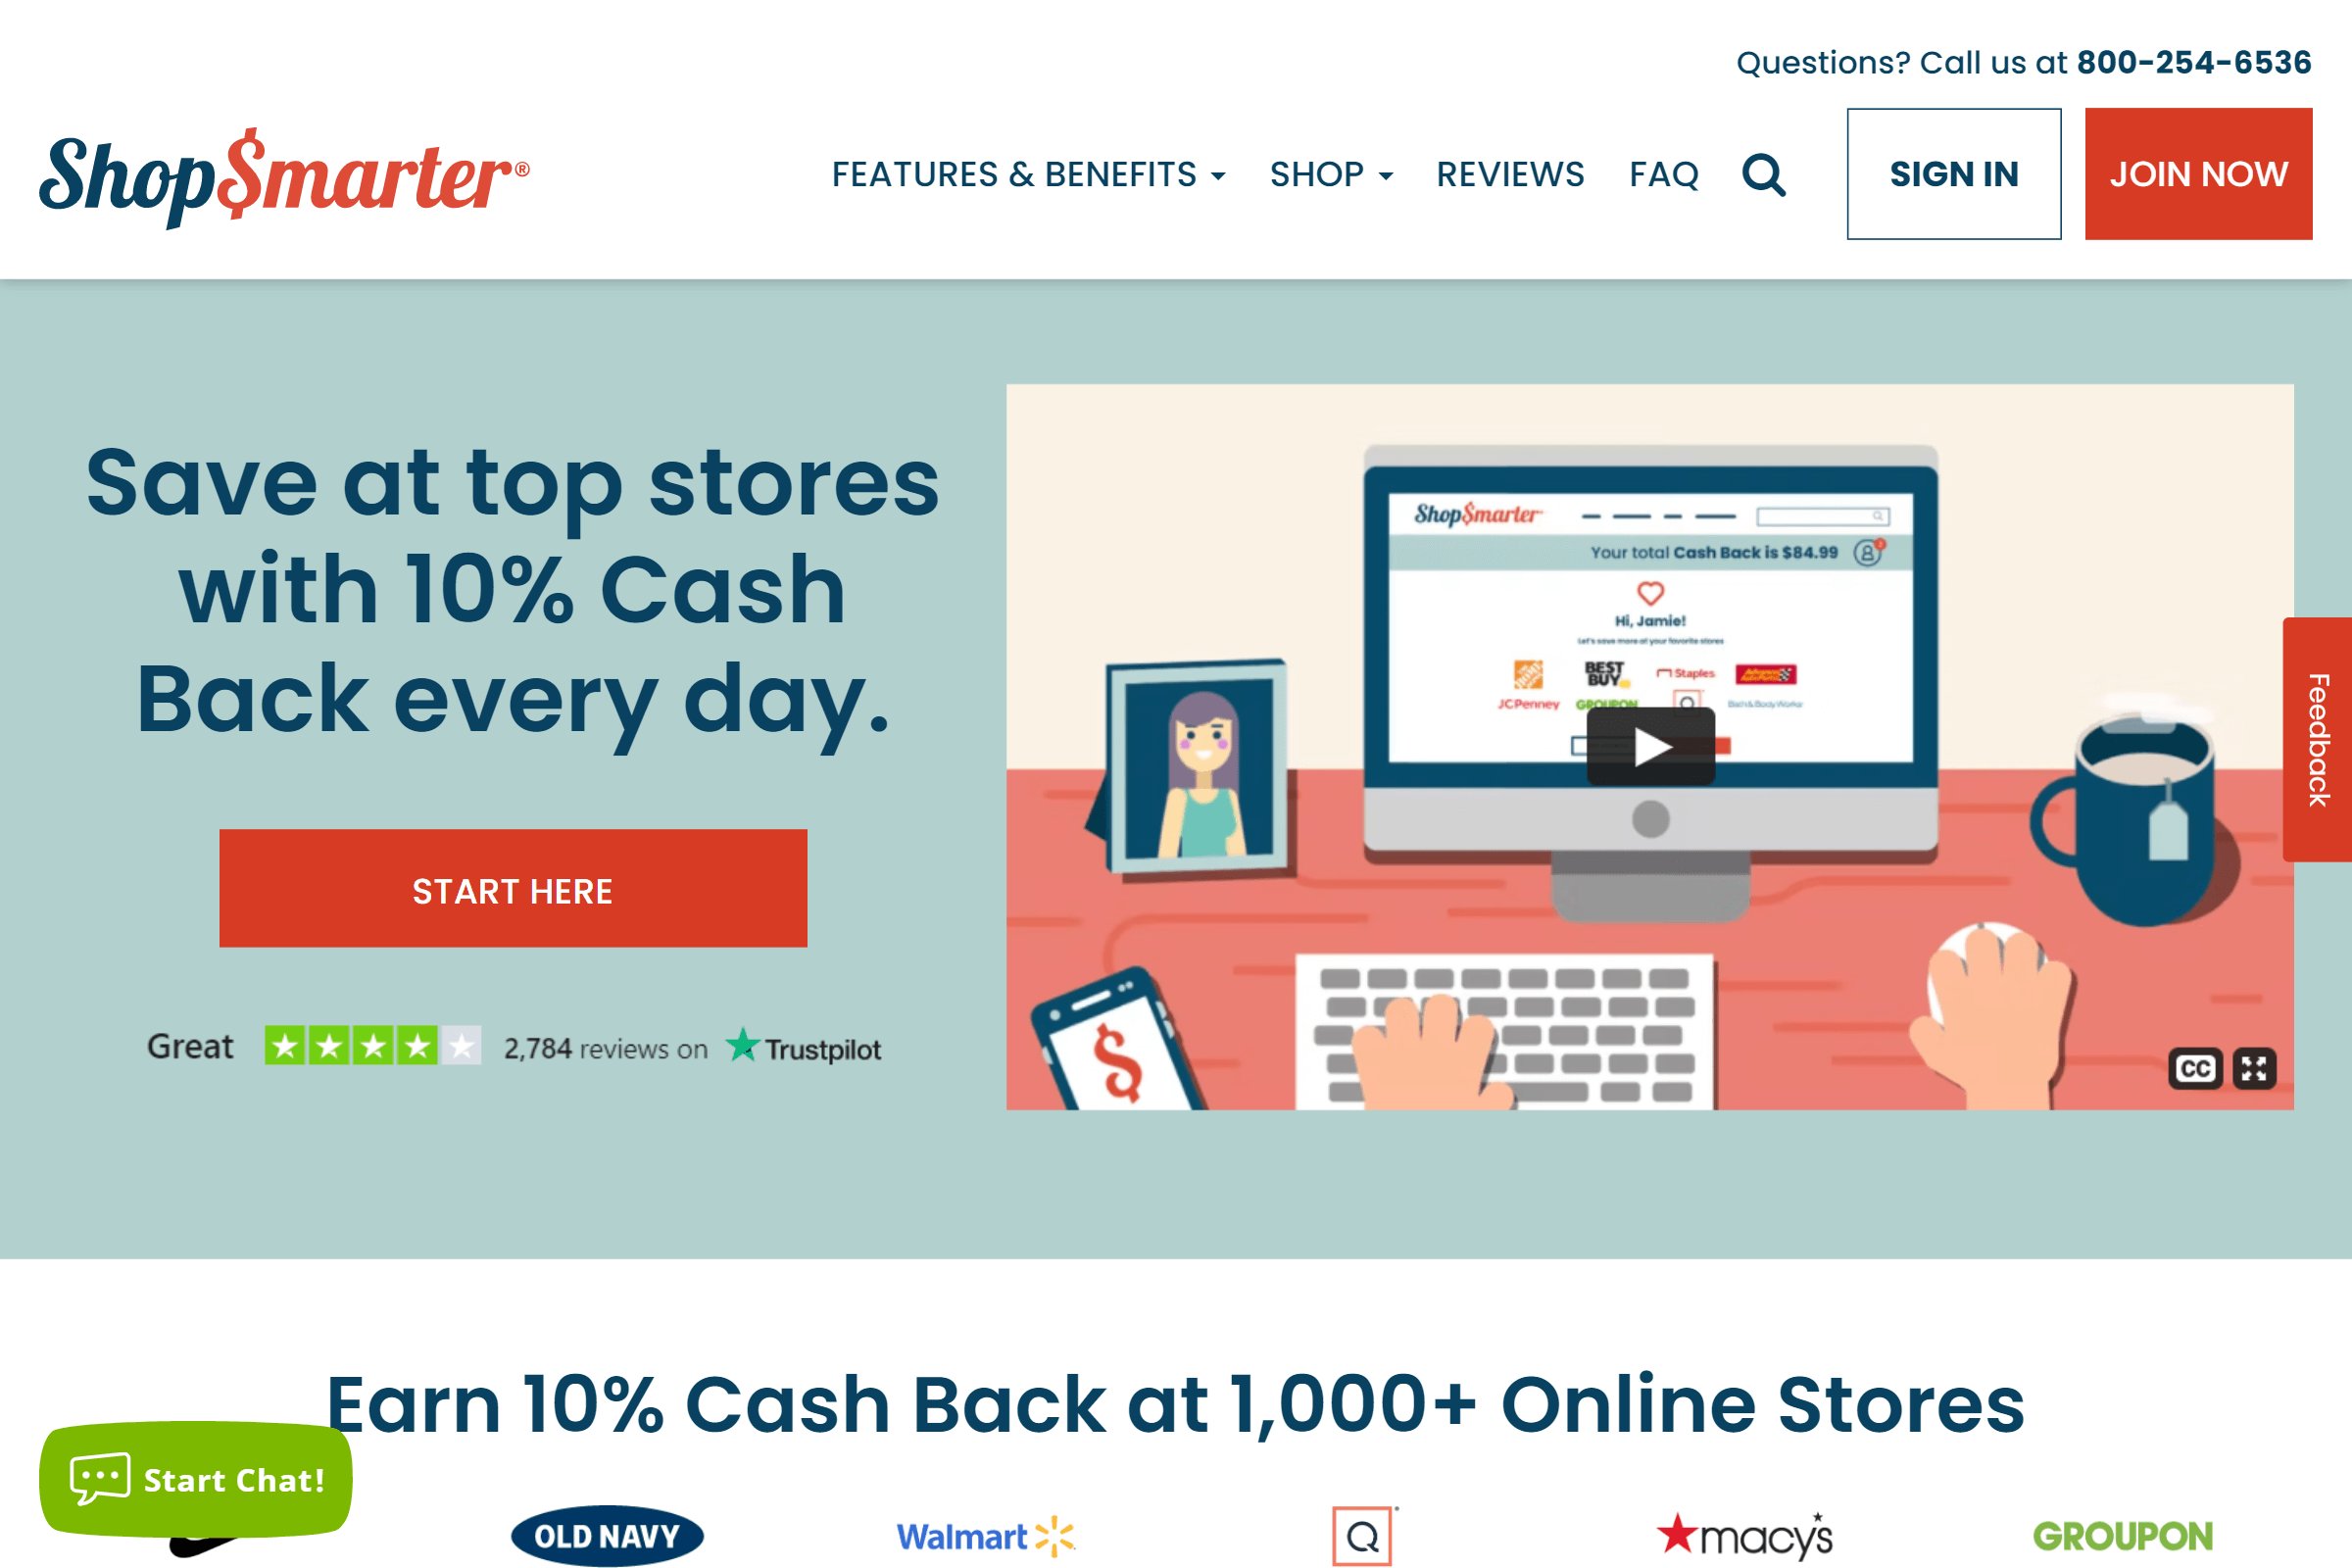 ShopSmarter on ReadSomeReviews